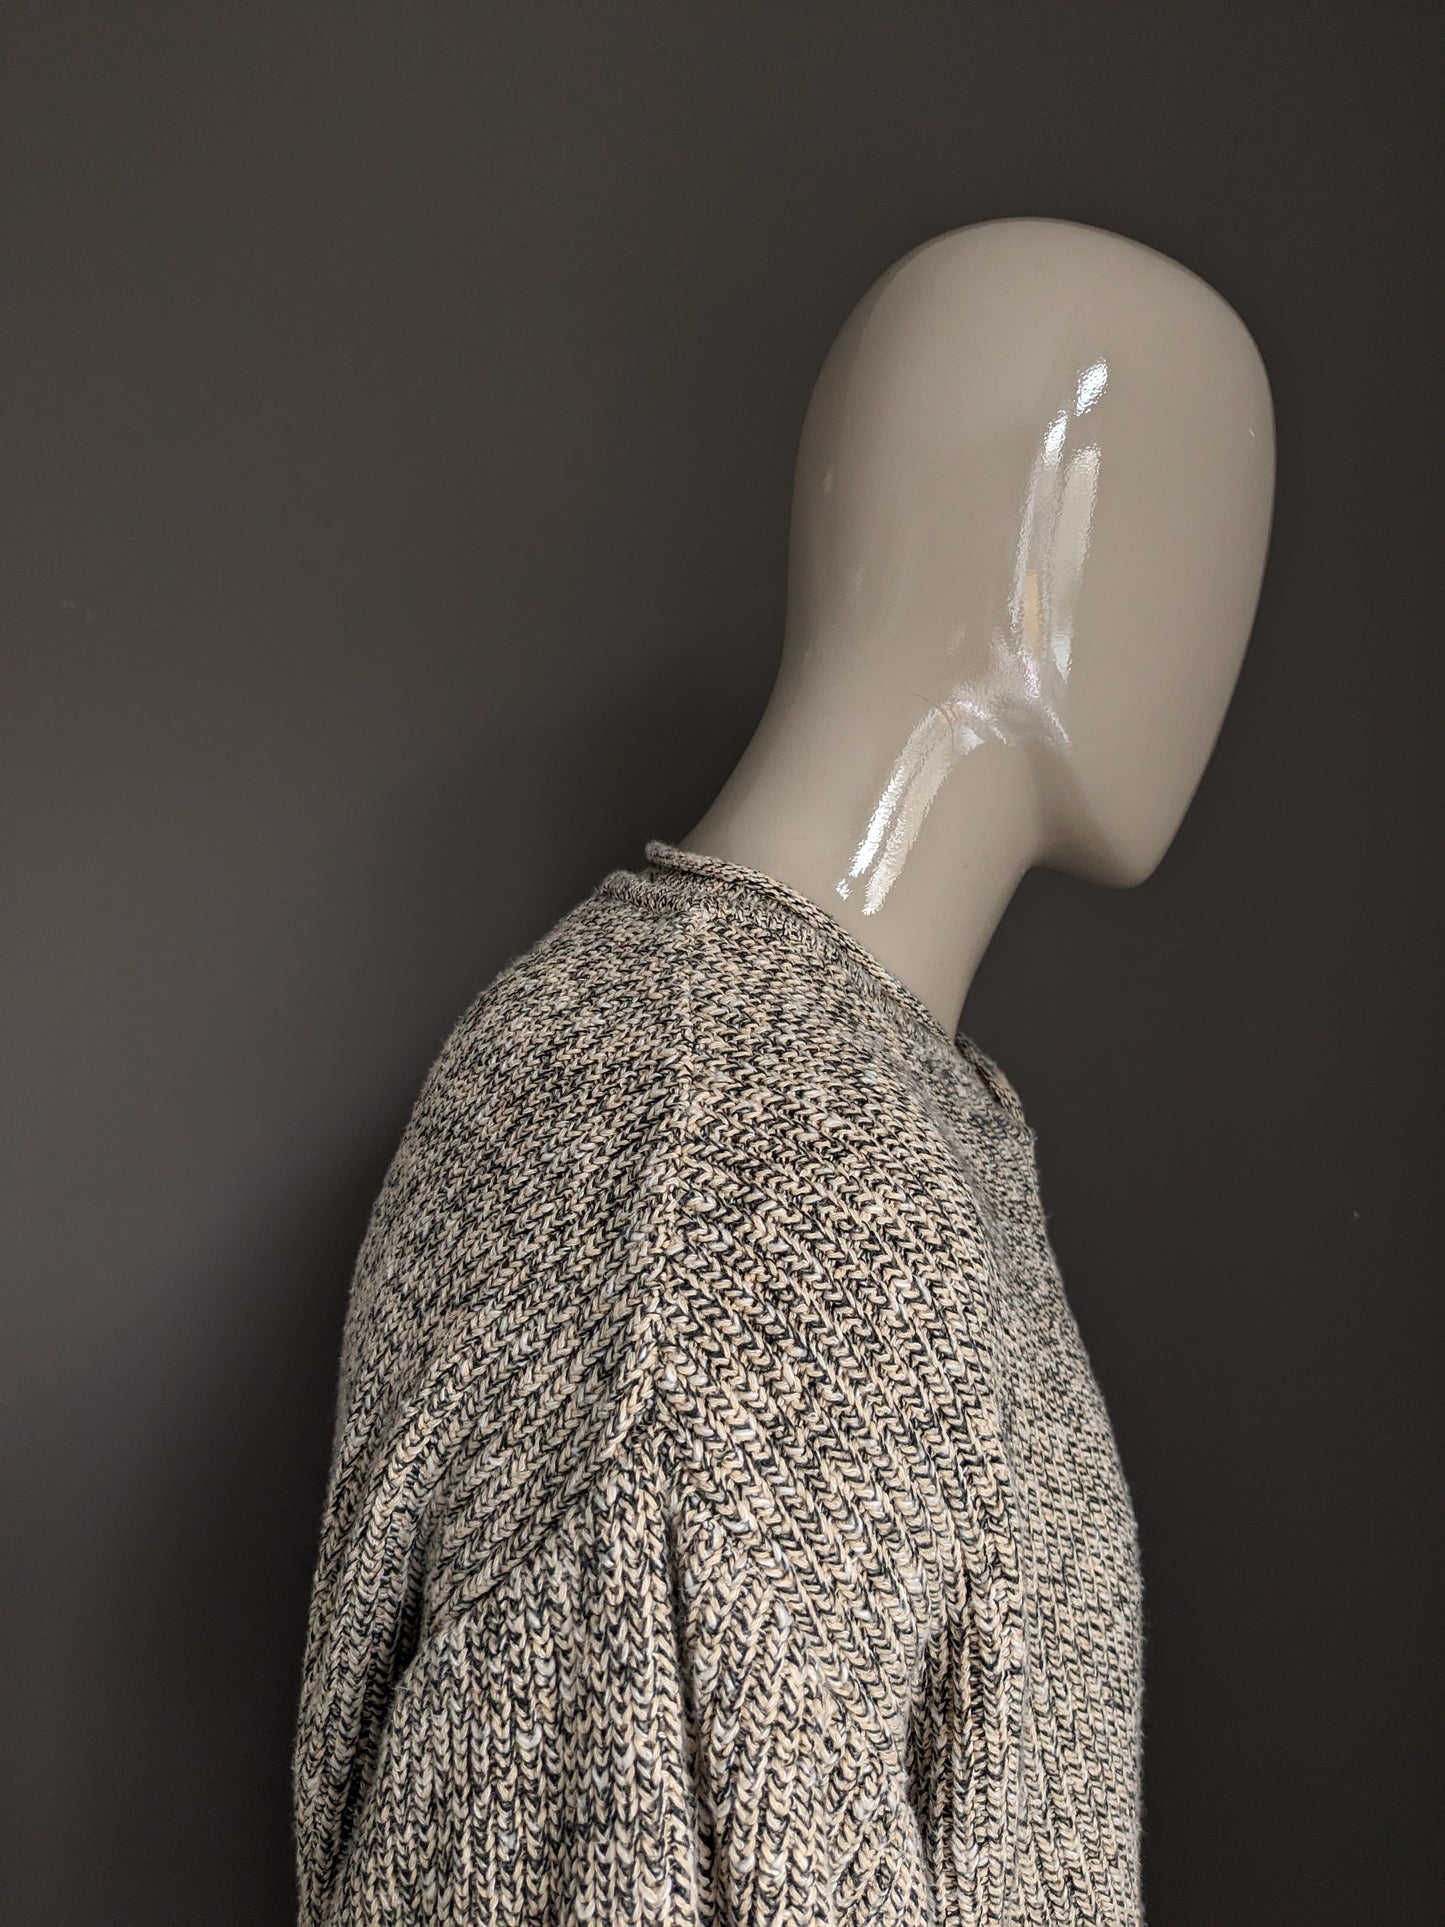 Maglione vintage della moda dell'uomo. Beige grigio misto. Dimensioni L / XL Modello oversize vintage.